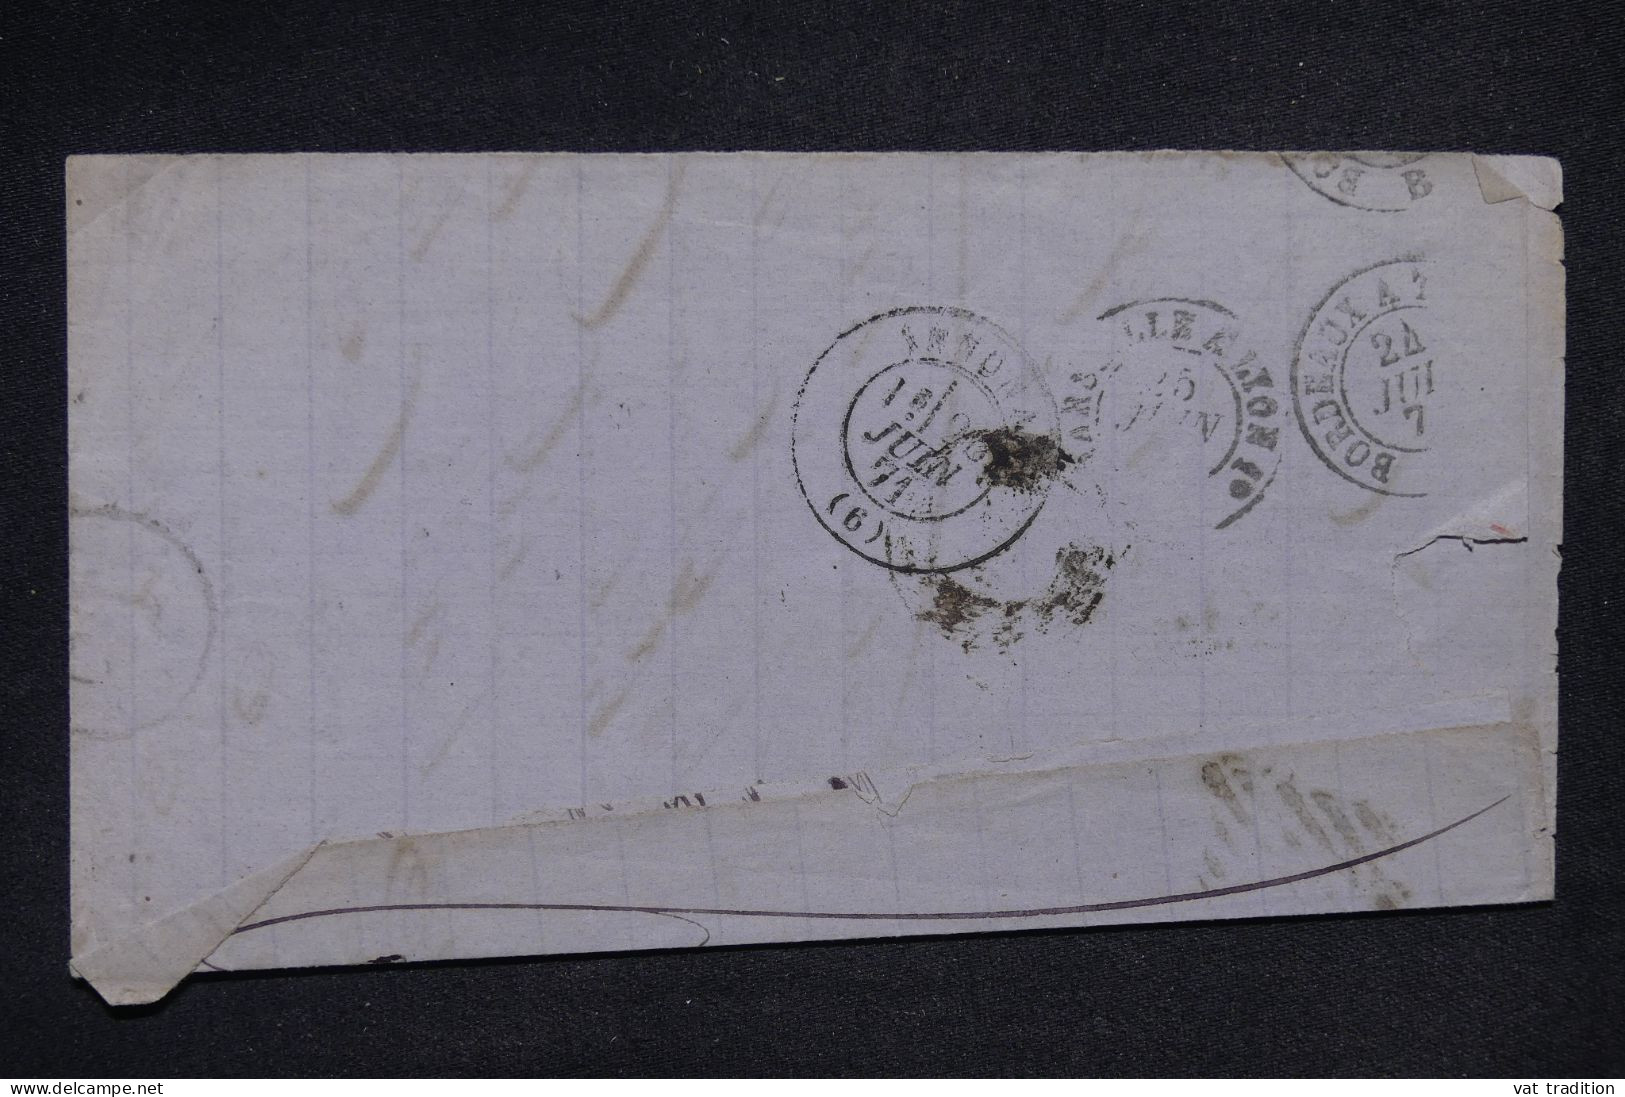 ESPAGNE - Lettre Pour La France En 1871 - L 147930 - Briefe U. Dokumente